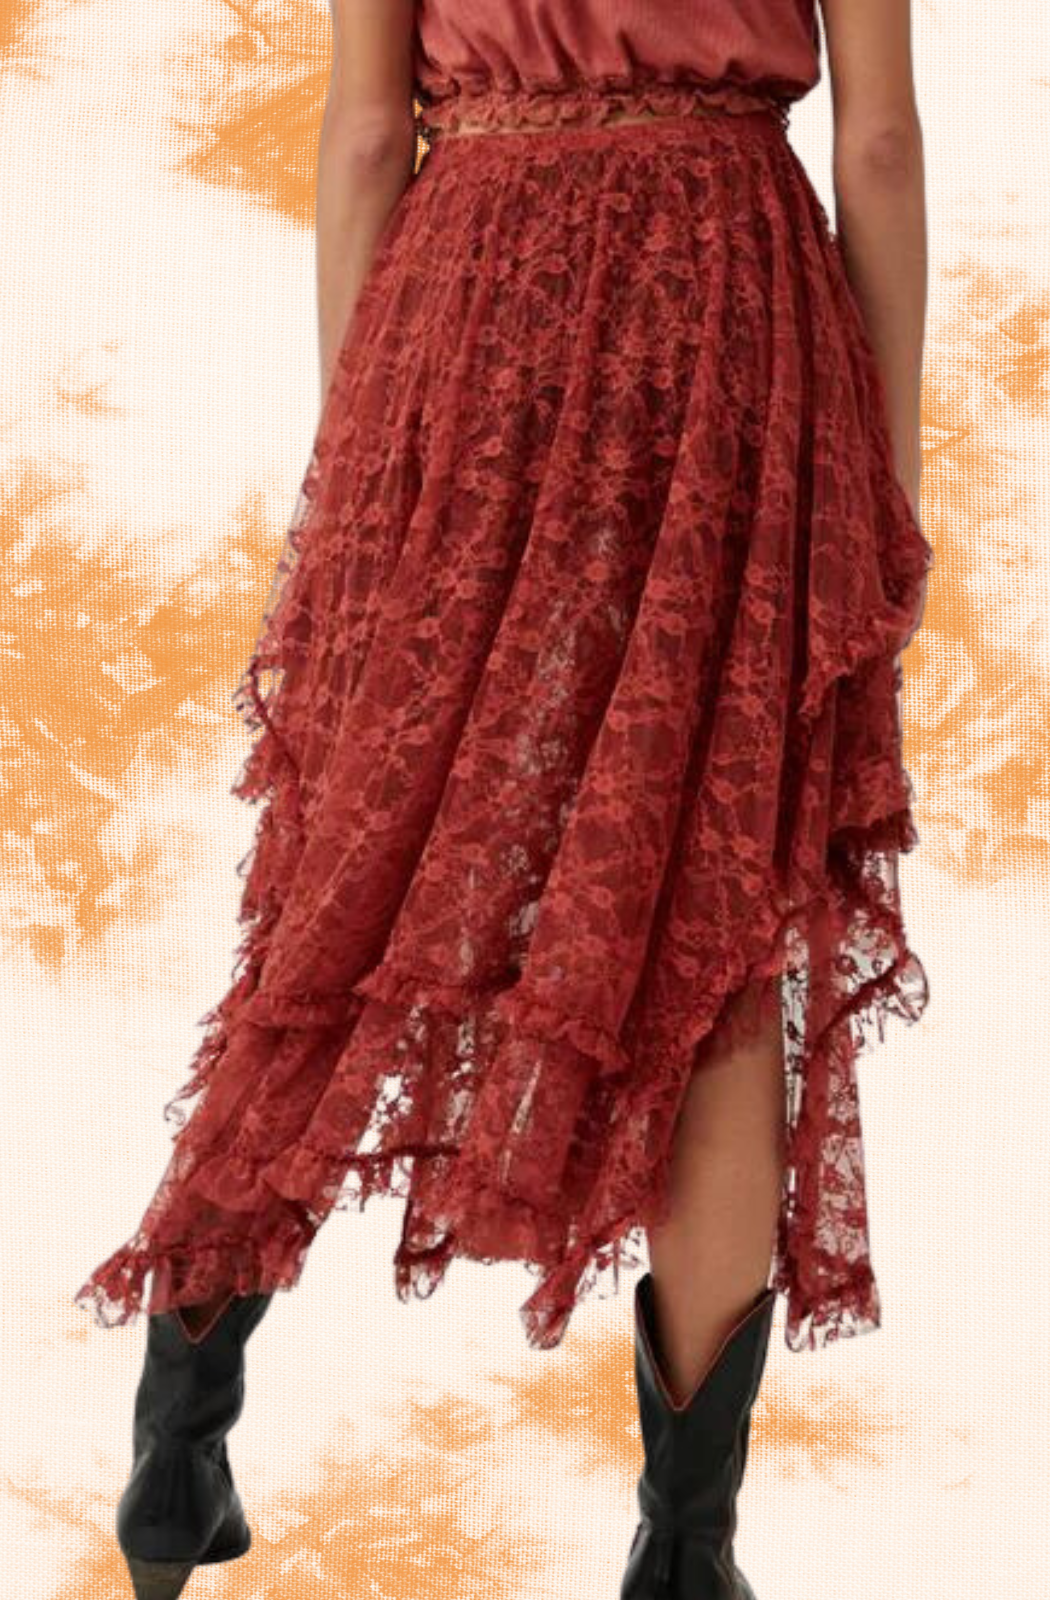 Rust Lace French Skirt/Slip - La De Da